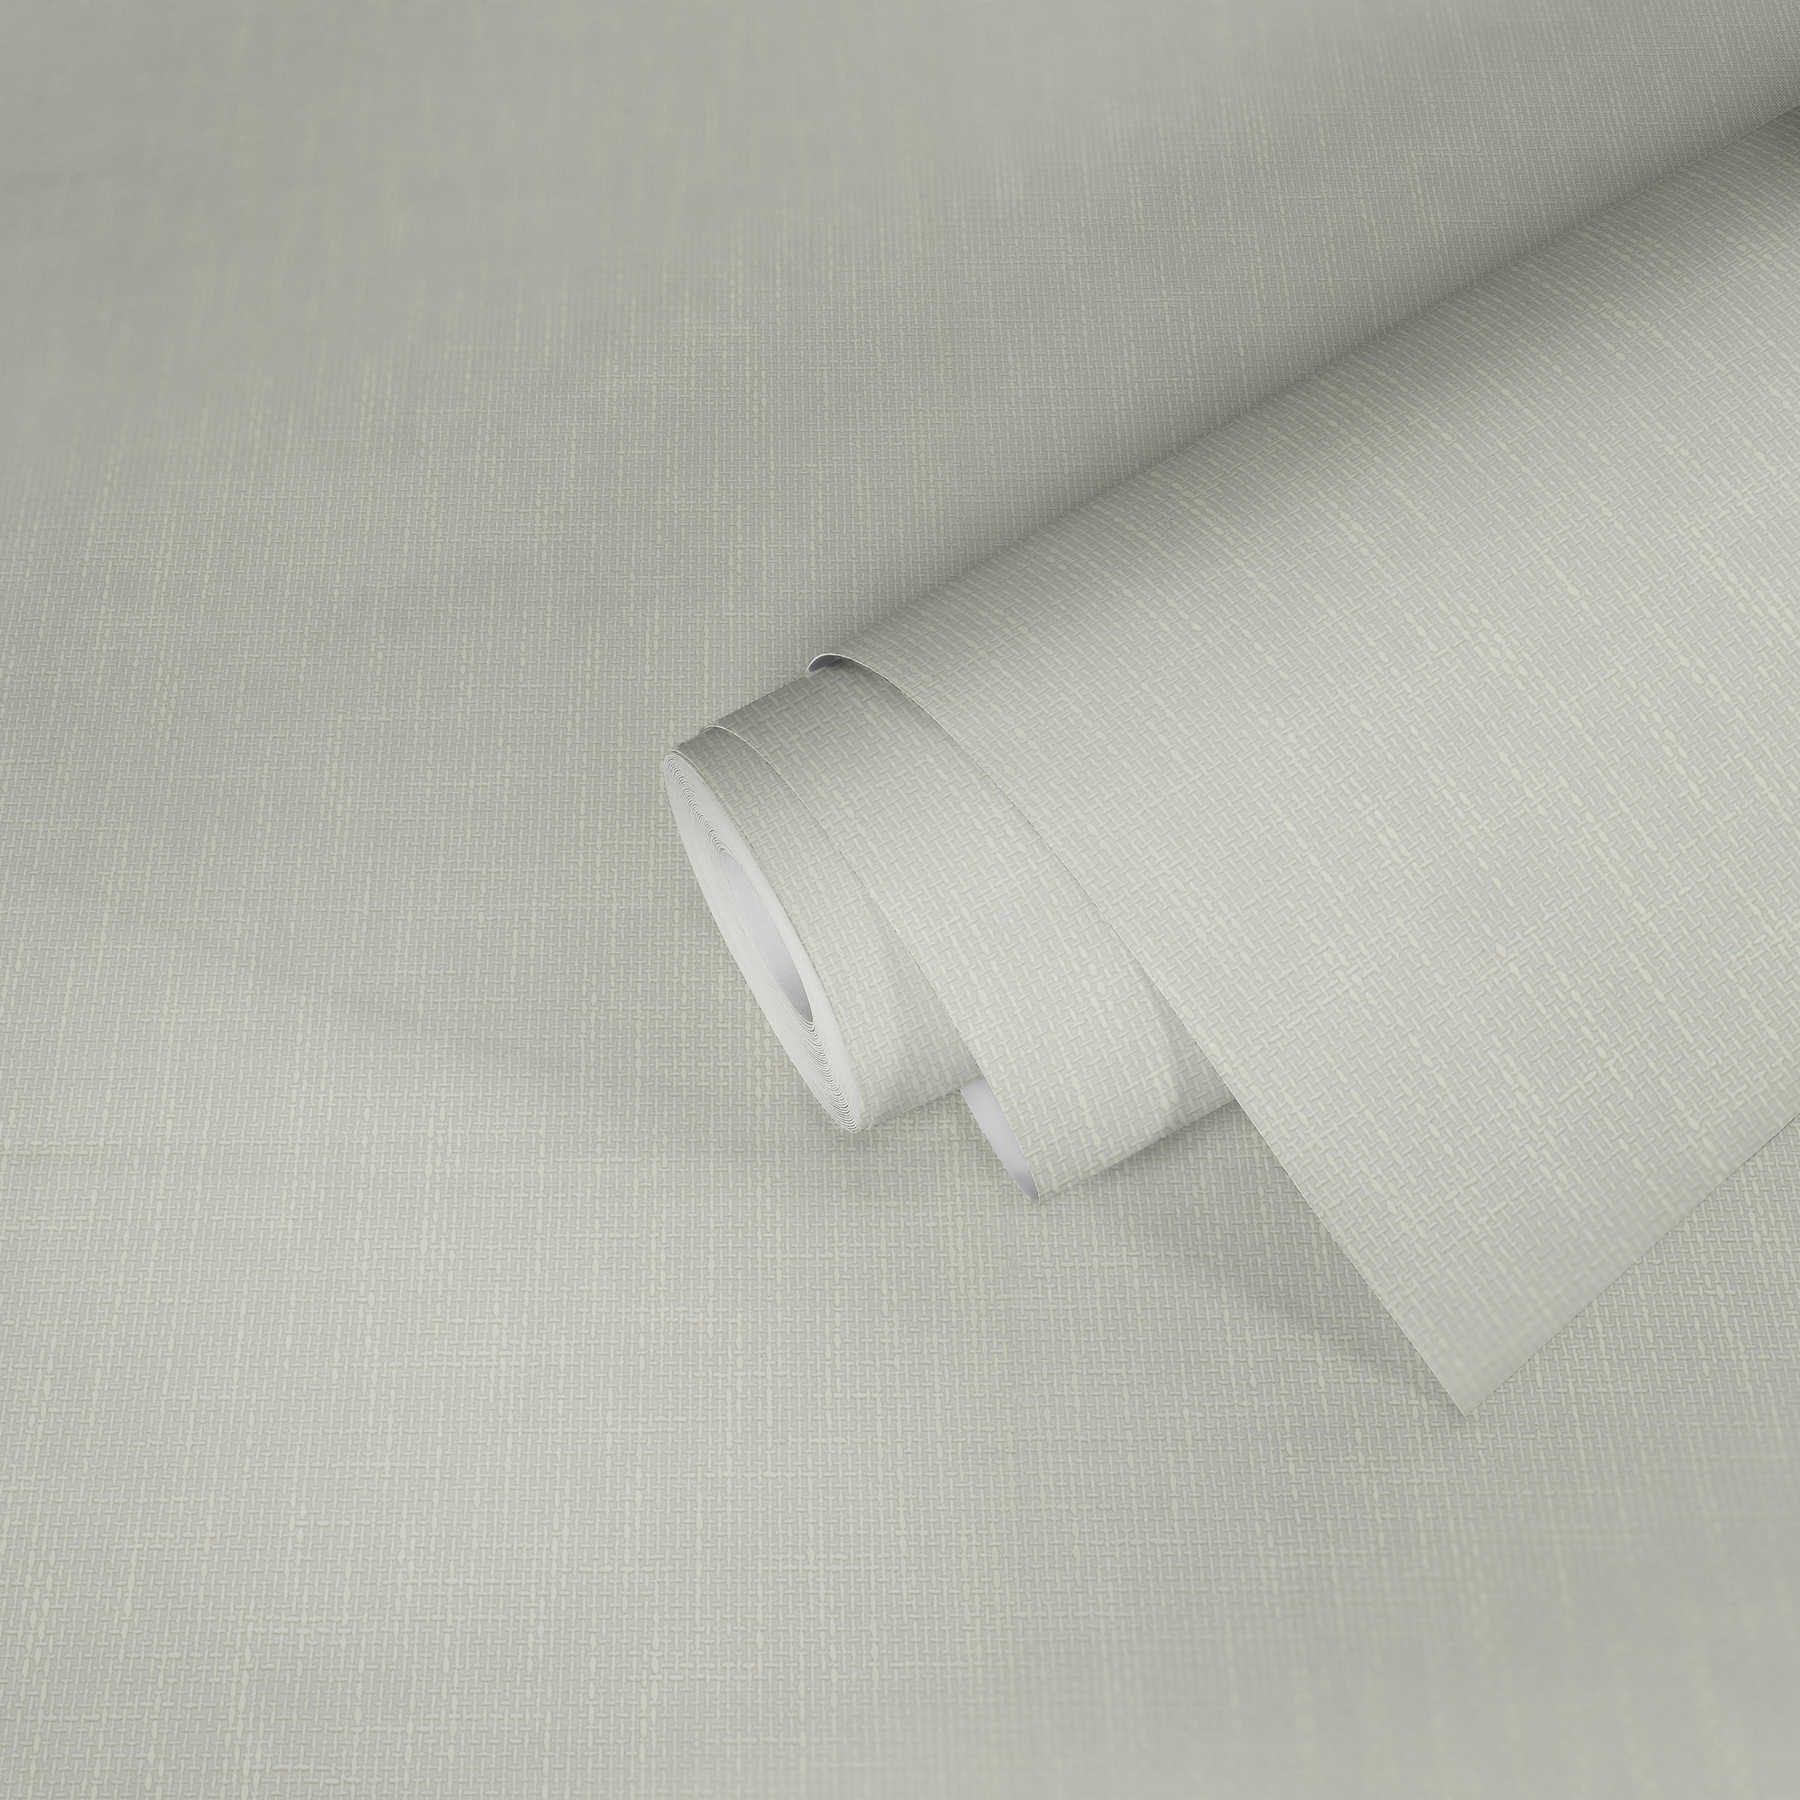             Papier peint profilé avec structure tissée imitation lin - Blanc
        